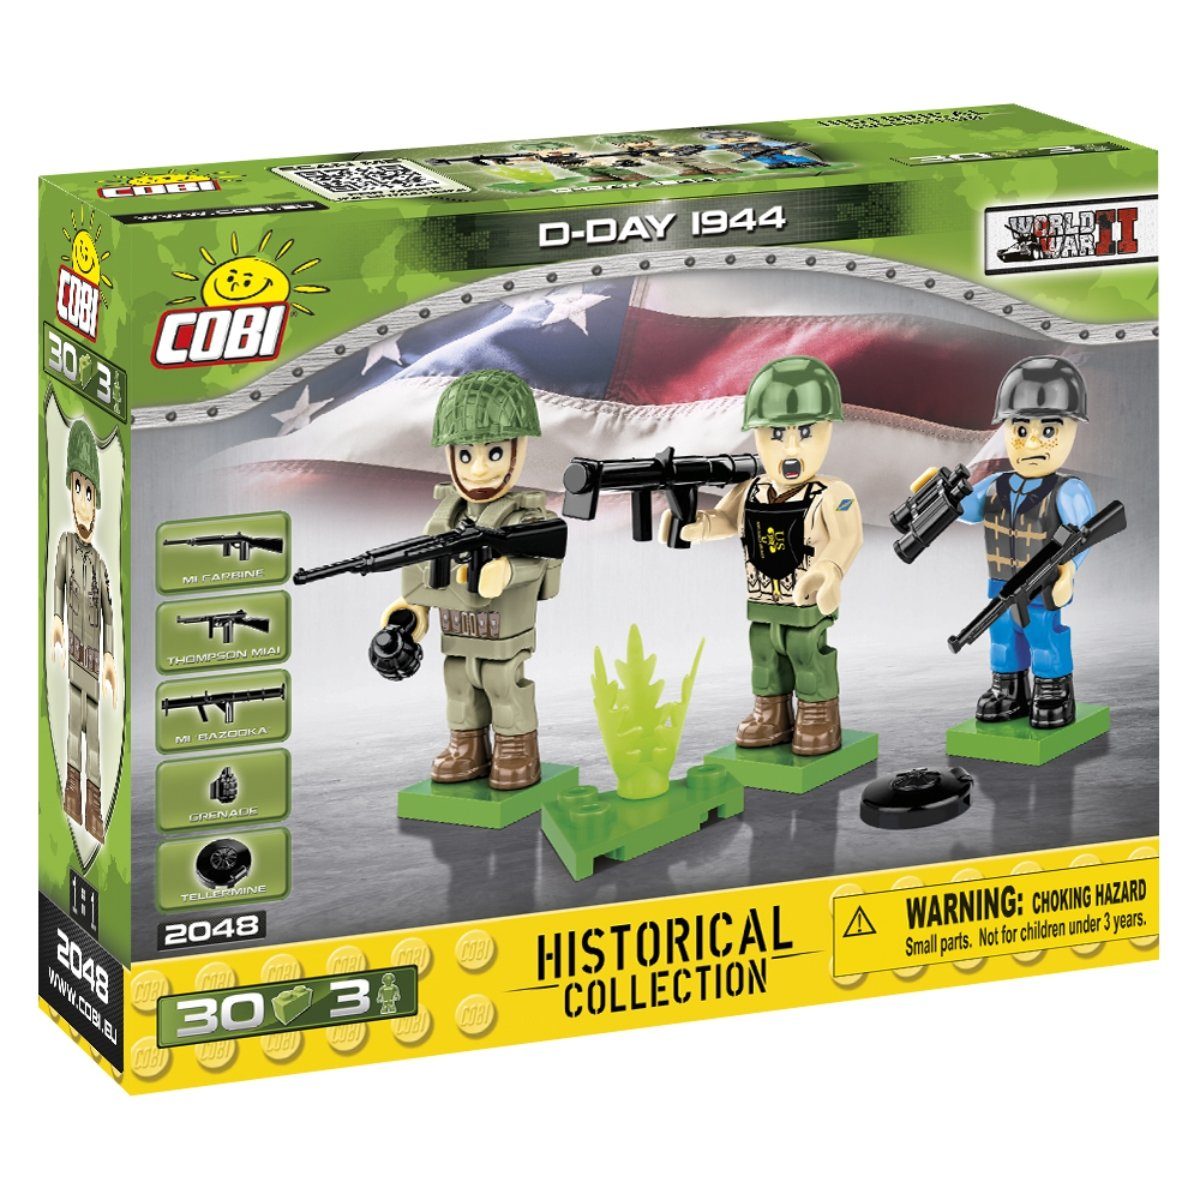 D-Day Figure (2048) – War Bricks